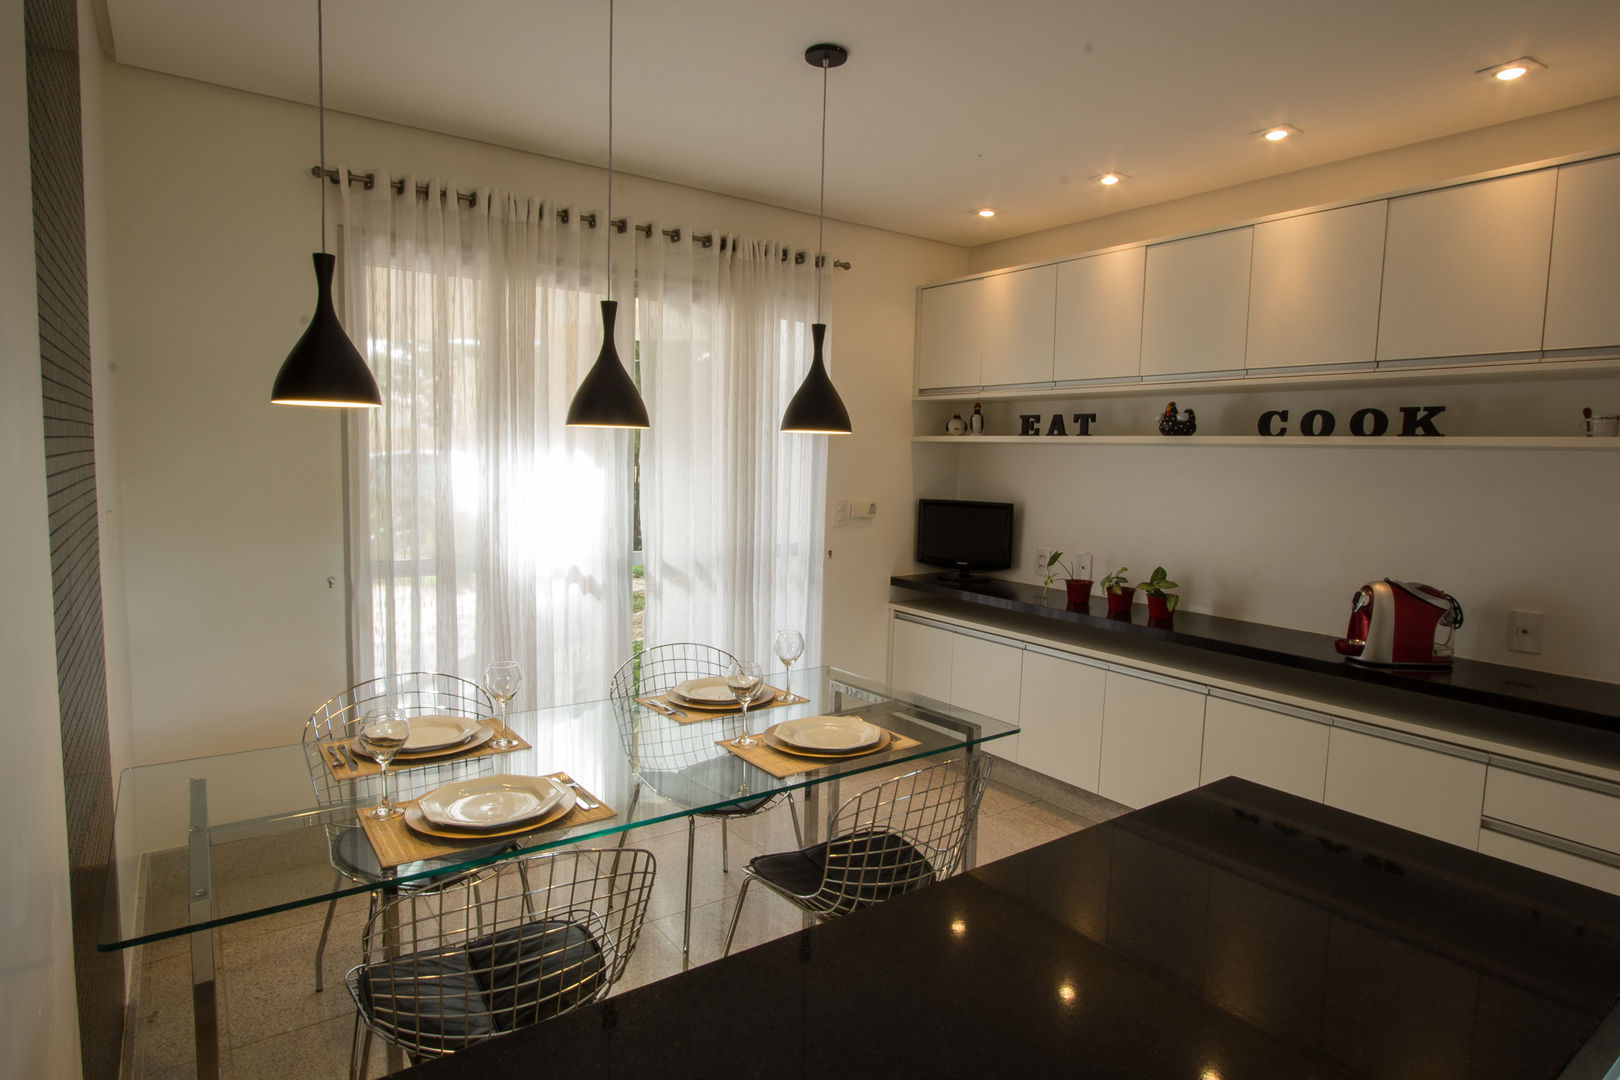 Cozinha P&B Tejo Arquitetura & Design Cozinhas modernas cozinha preta,Iluminação de cozinha,armário de cozinha,copa,cadeira de cozinha,decoração de cozinha,cozinha,kitchen,cucina